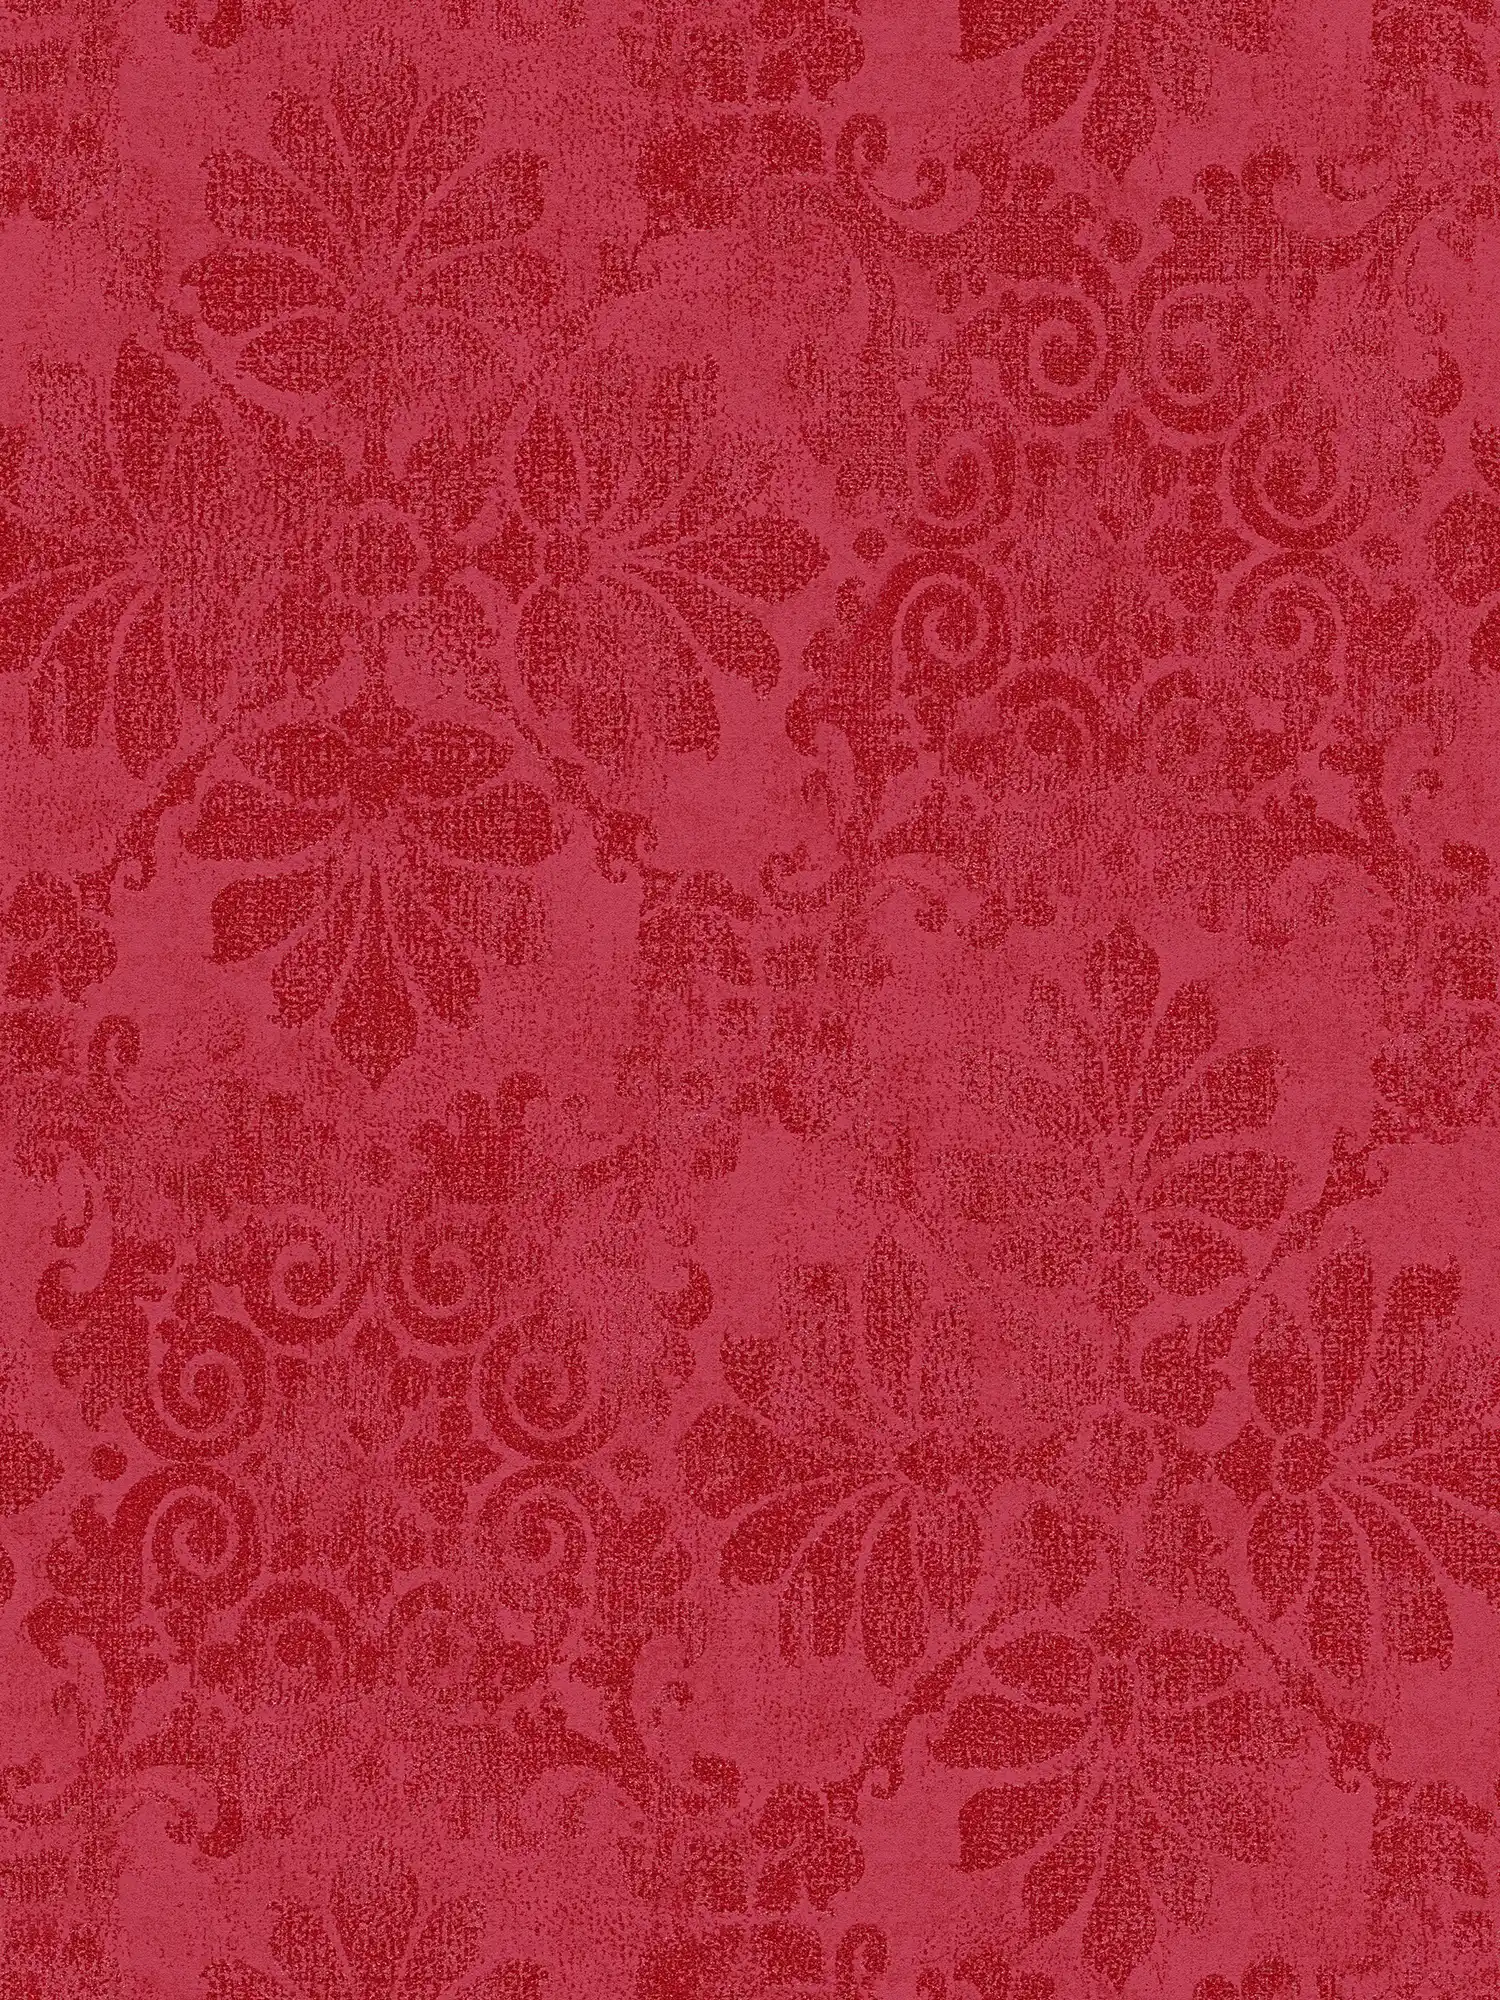         Papel pintado con adornos florales de aspecto vintage - rojo, metálico
    